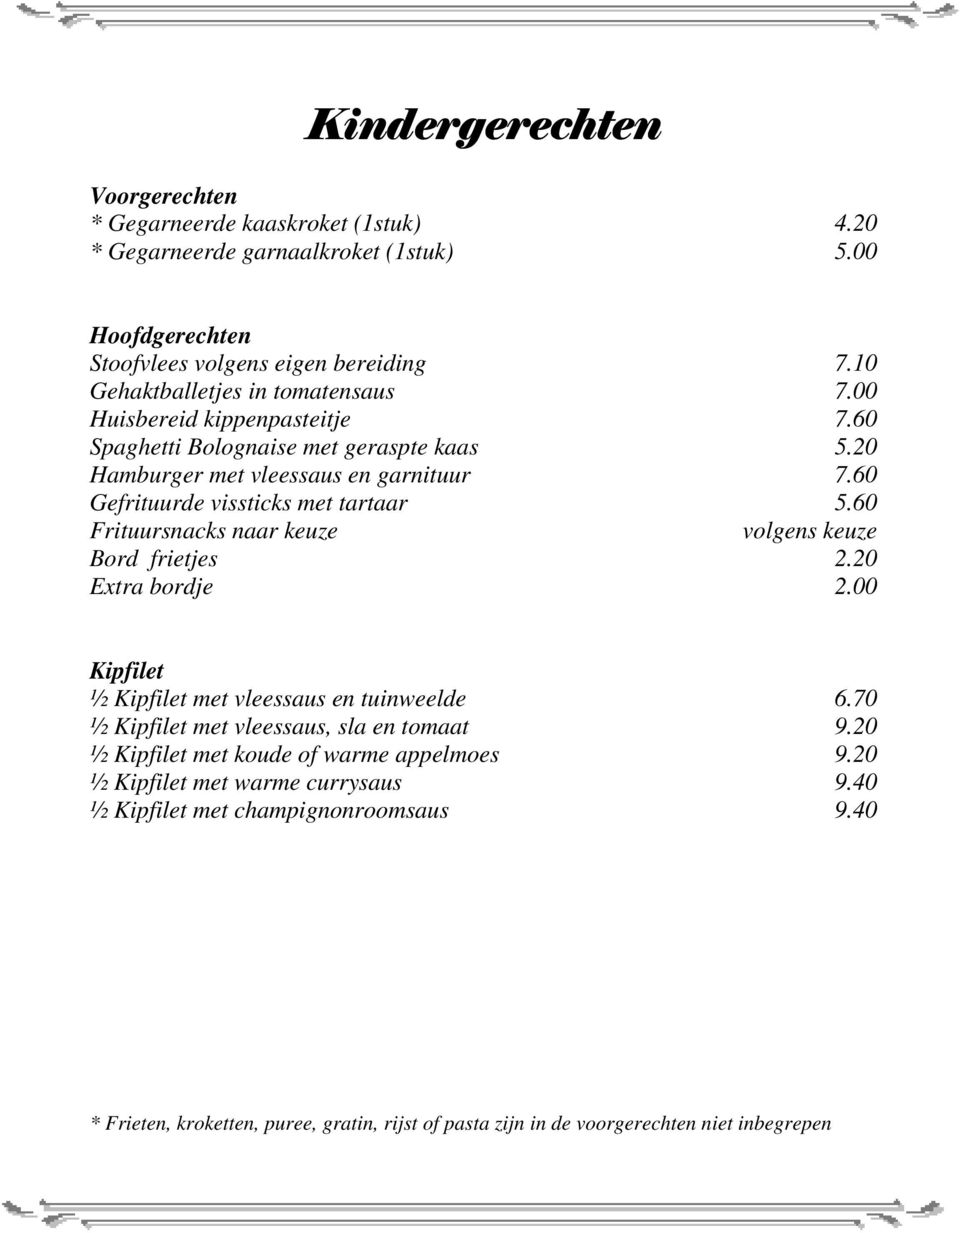 60 Gefrituurde vissticks met tartaar 5.60 Frituursnacks naar keuze volgens keuze Bord frietjes 2.20 Extra bordje 2.00 Kipfilet ½ Kipfilet met vleessaus en tuinweelde 6.